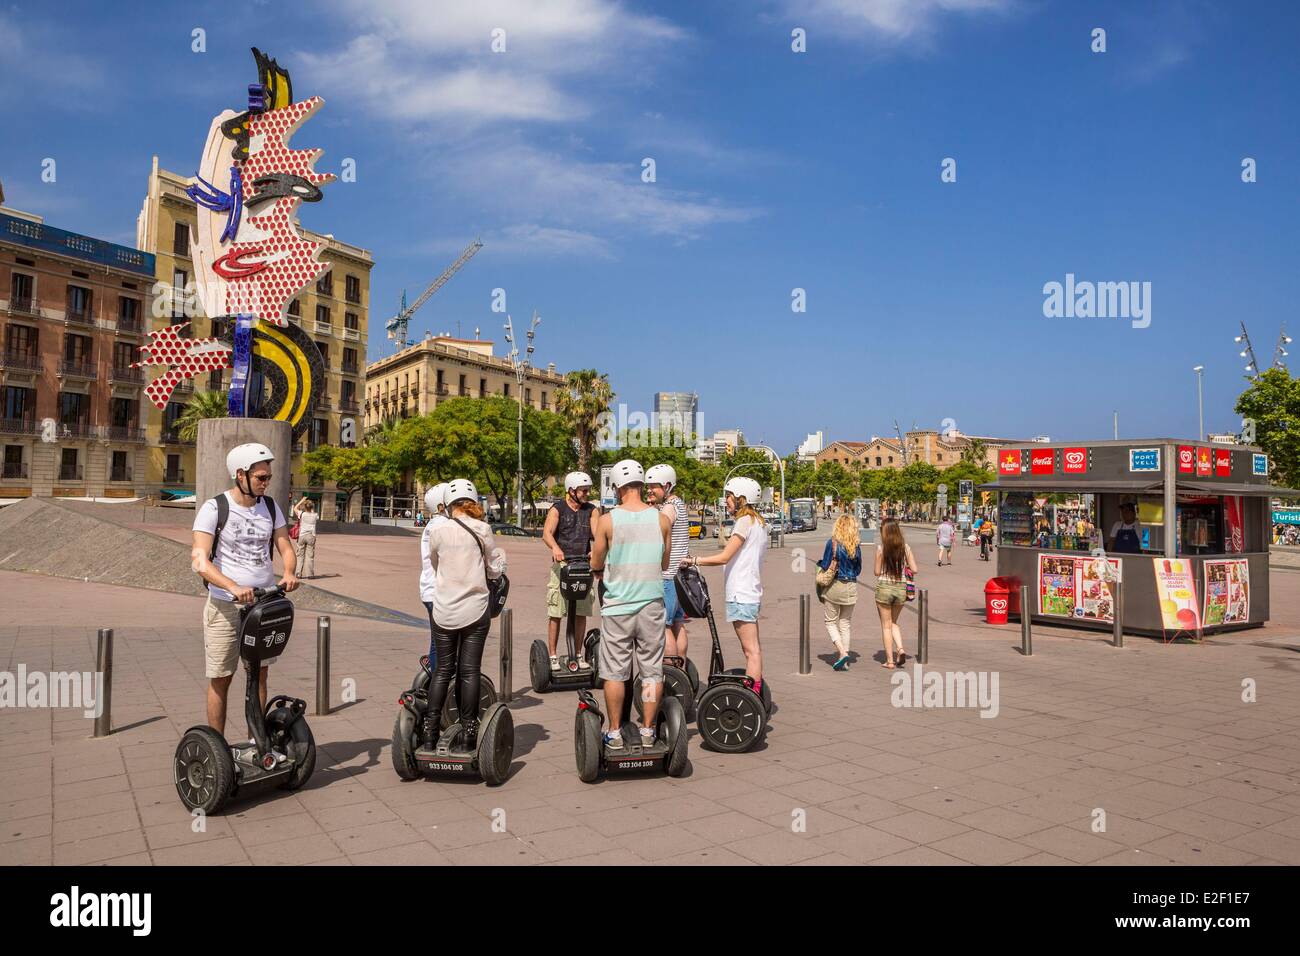 Spanien, Katalonien, Barcelona, Port Vell, Sehenswürdigkeiten in Segway, Skulptur Cap de Barcelona (1992) Stockfoto